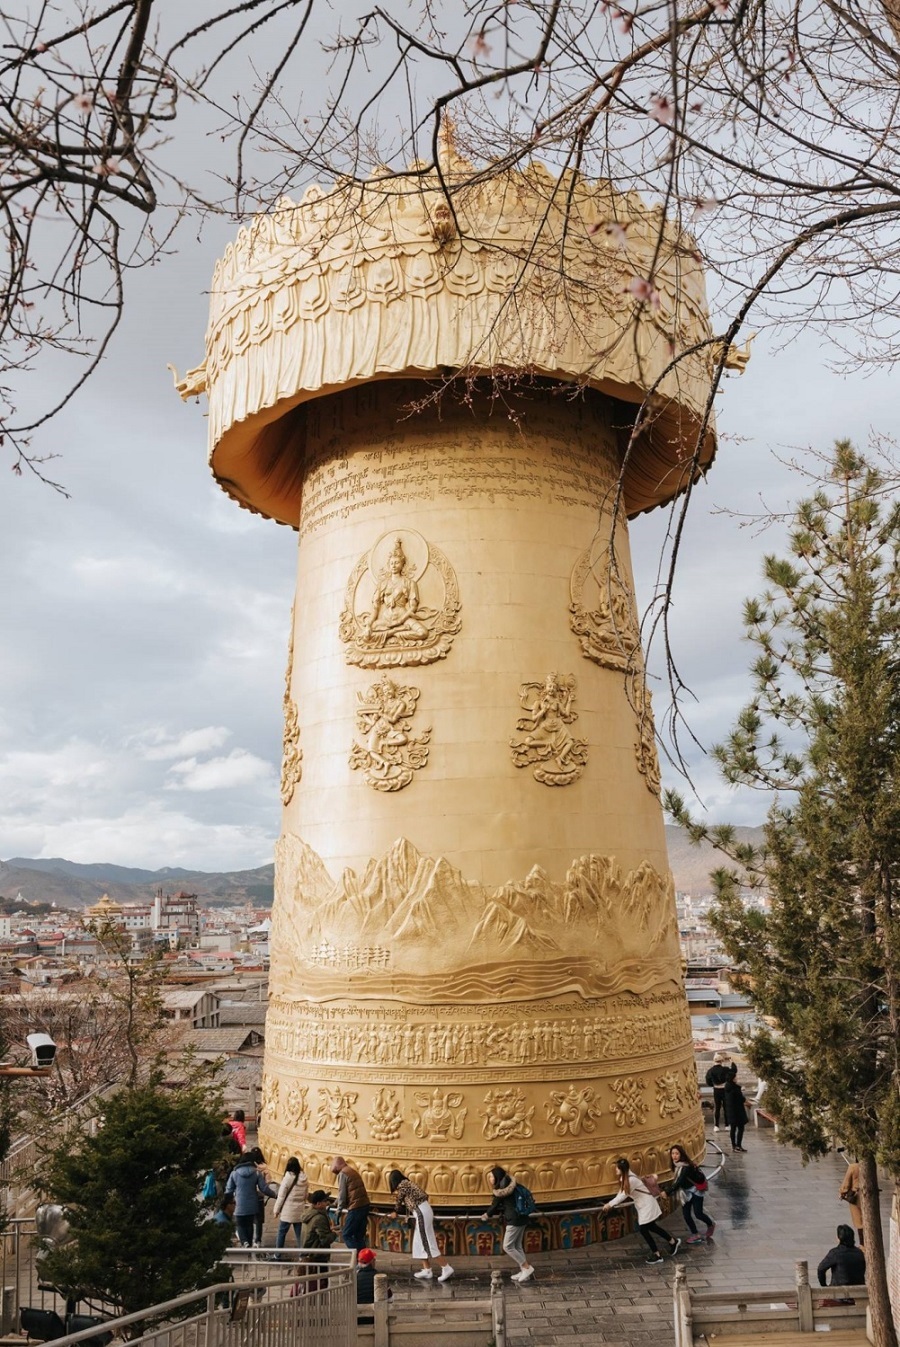   Bánh xe cầu nguyện, hay vòng quay Kim Luân, tại đền Dukezong (Độc Khắc Tông) là một bánh xe hình trụ, được làm từ kim loại, gỗ, đá, da thuộc hoặc sợi bông thô. Ở bên ngoài bánh xe là câu thần chú Om Mani Padme Hum được viết bằng ngôn ngữ Newari của Nepal.   Theo truyền thống Phật giáo Tây Tạng, việc quay một bánh xe như vậy sẽ có nhiều tác dụng tương tự như việc đọc lời cầu nguyện bằng miệng. Hiếu và nhóm bạn phải cần thêm những người khác để xoay bánh xe, thường là phải từ 10 người trở lên.